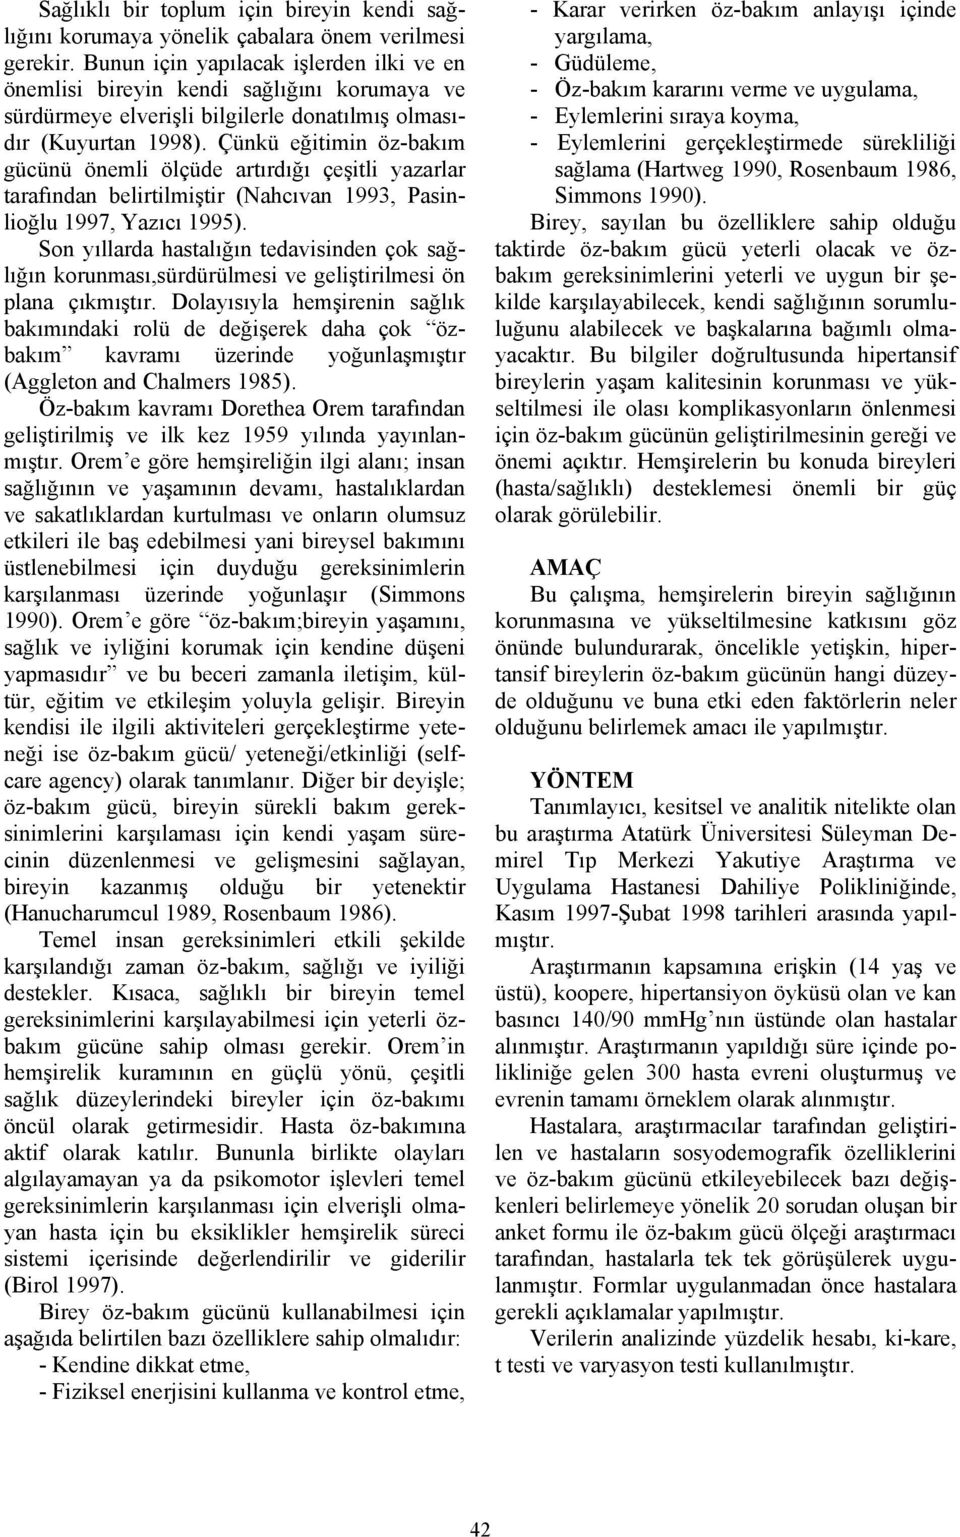 Çünkü eğitimin öz-bakım gücünü önemli ölçüde artırdığı çeşitli yazarlar tarafından belirtilmiştir (Nahcıvan 1993, Pasinlioğlu 1997, Yazıcı 1995).